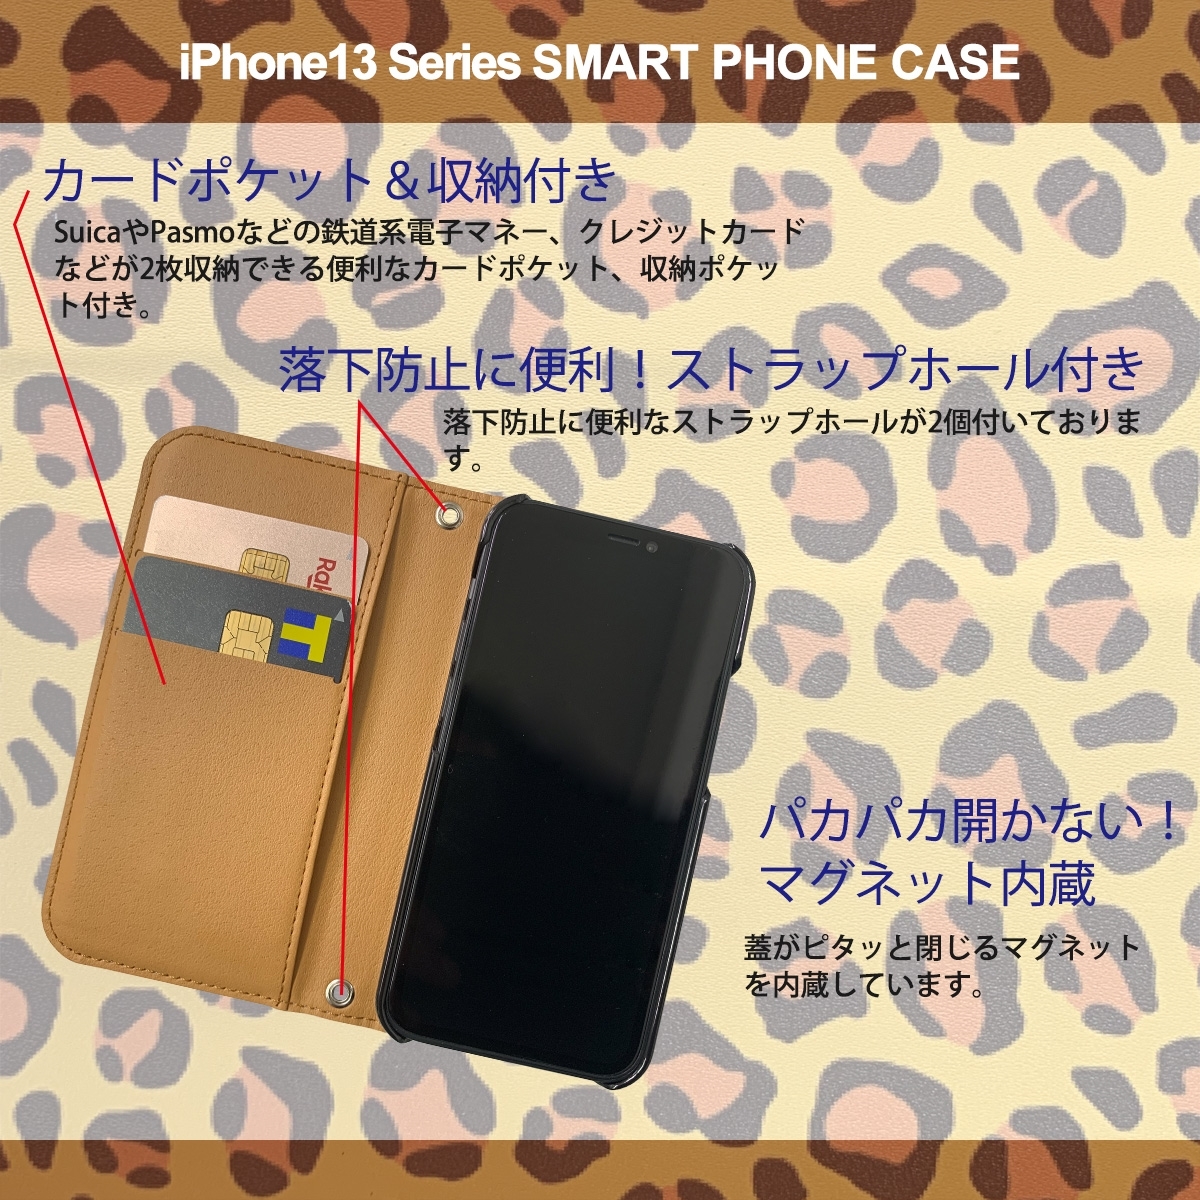 1】 iPhone13 Pro Max 手帳型 アイフォン ケース スマホカバー PVC レザー アニマル柄 ヒョウ柄 ピンク